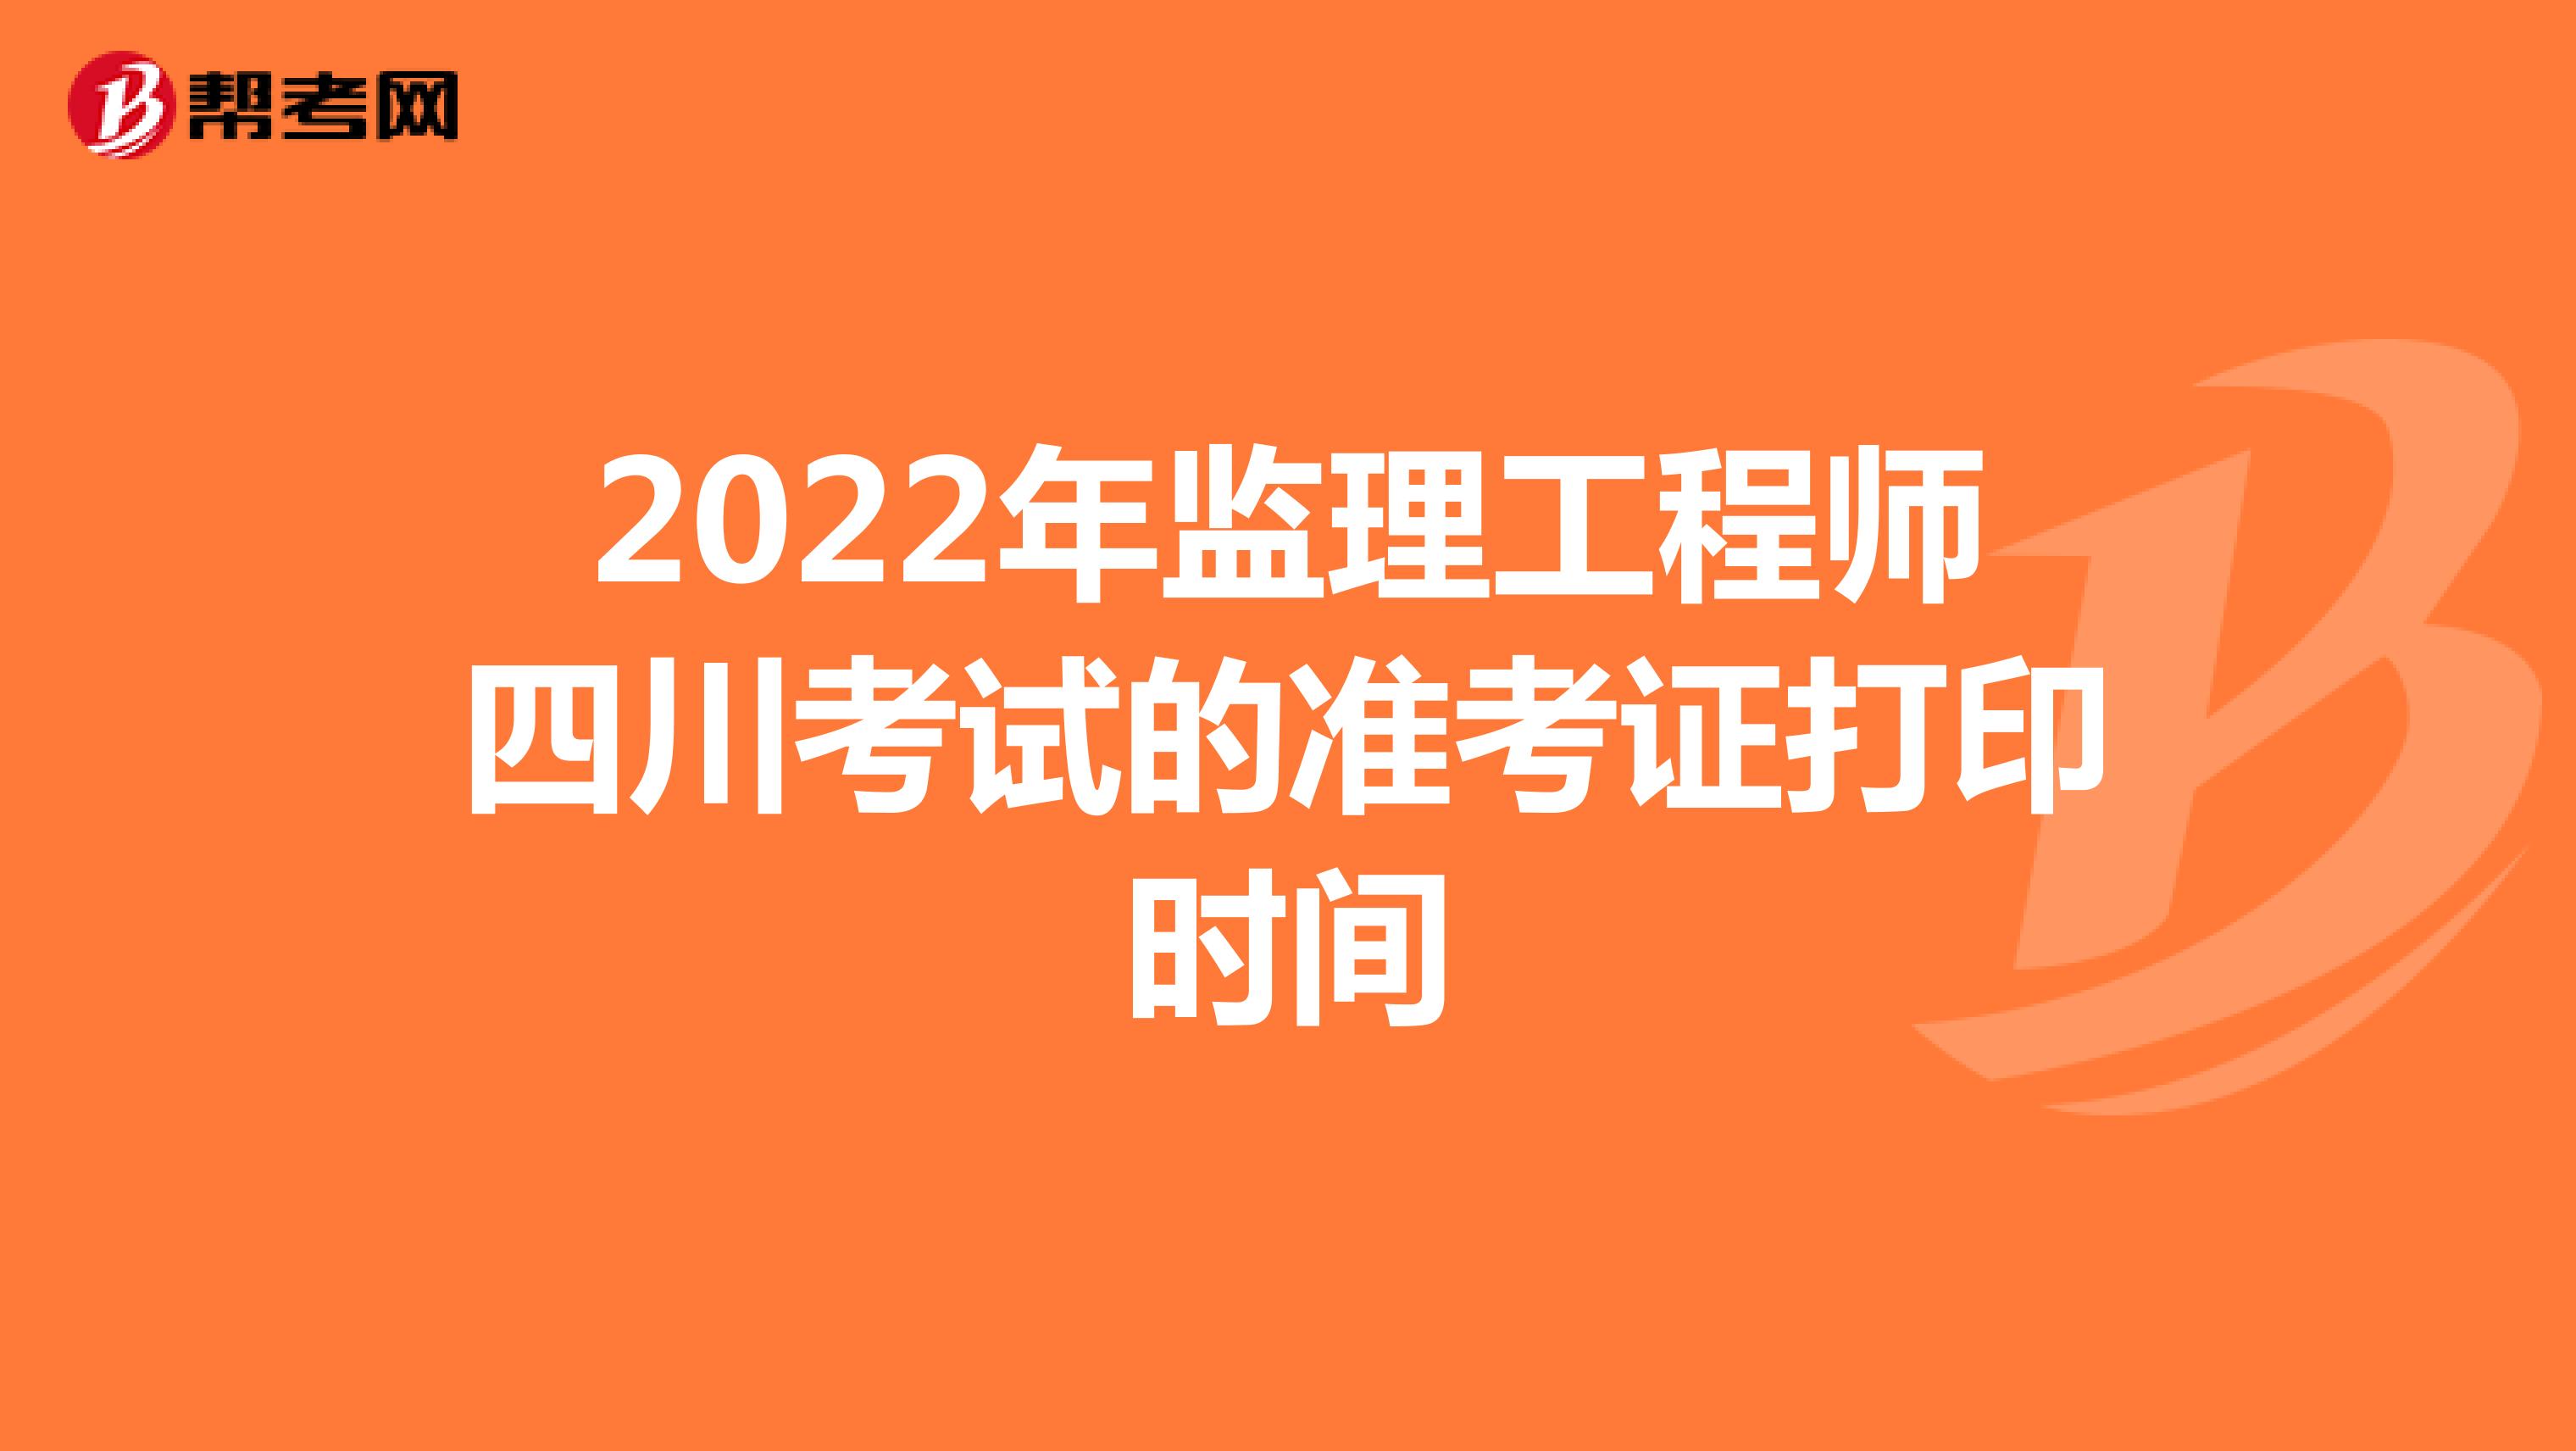 2022年监理工程师四川考试的准考证打印时间